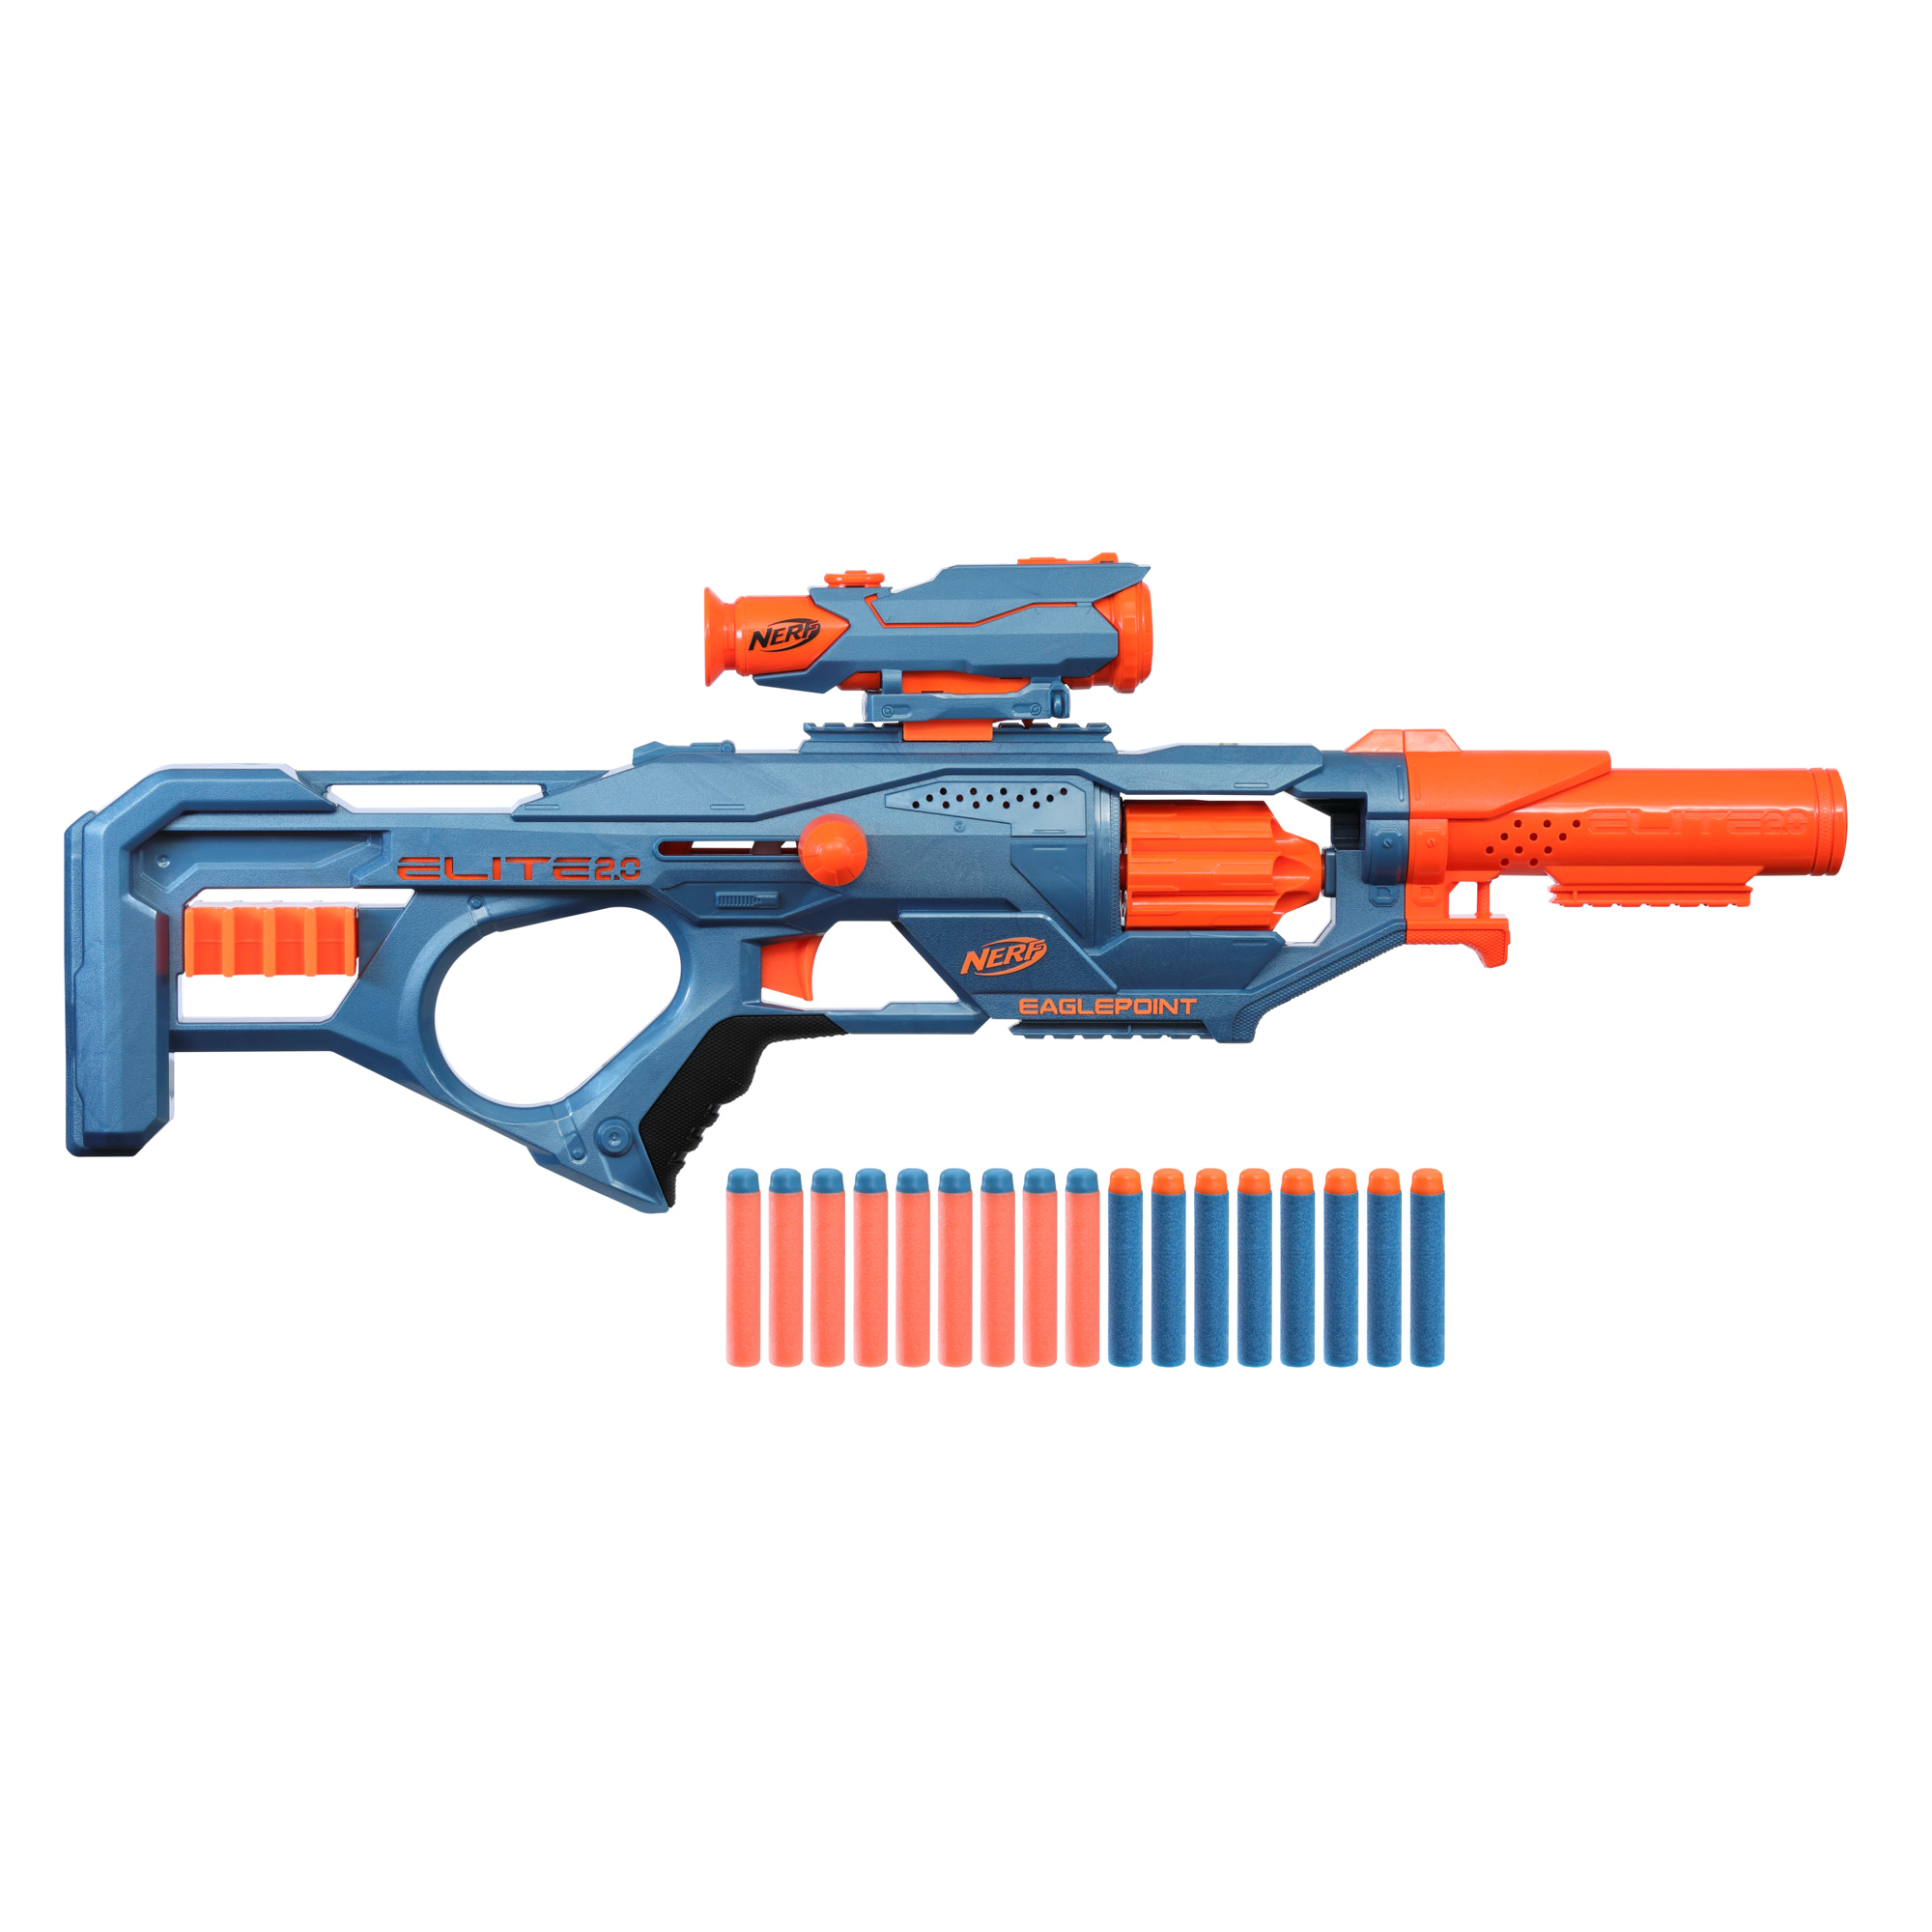 Nerf Roblox - Cobra: blaster lancia dardi Viper Strike, con codice per  esclusivo articolo virtuale - Hasbro - Pistole e fucili - Giocattoli